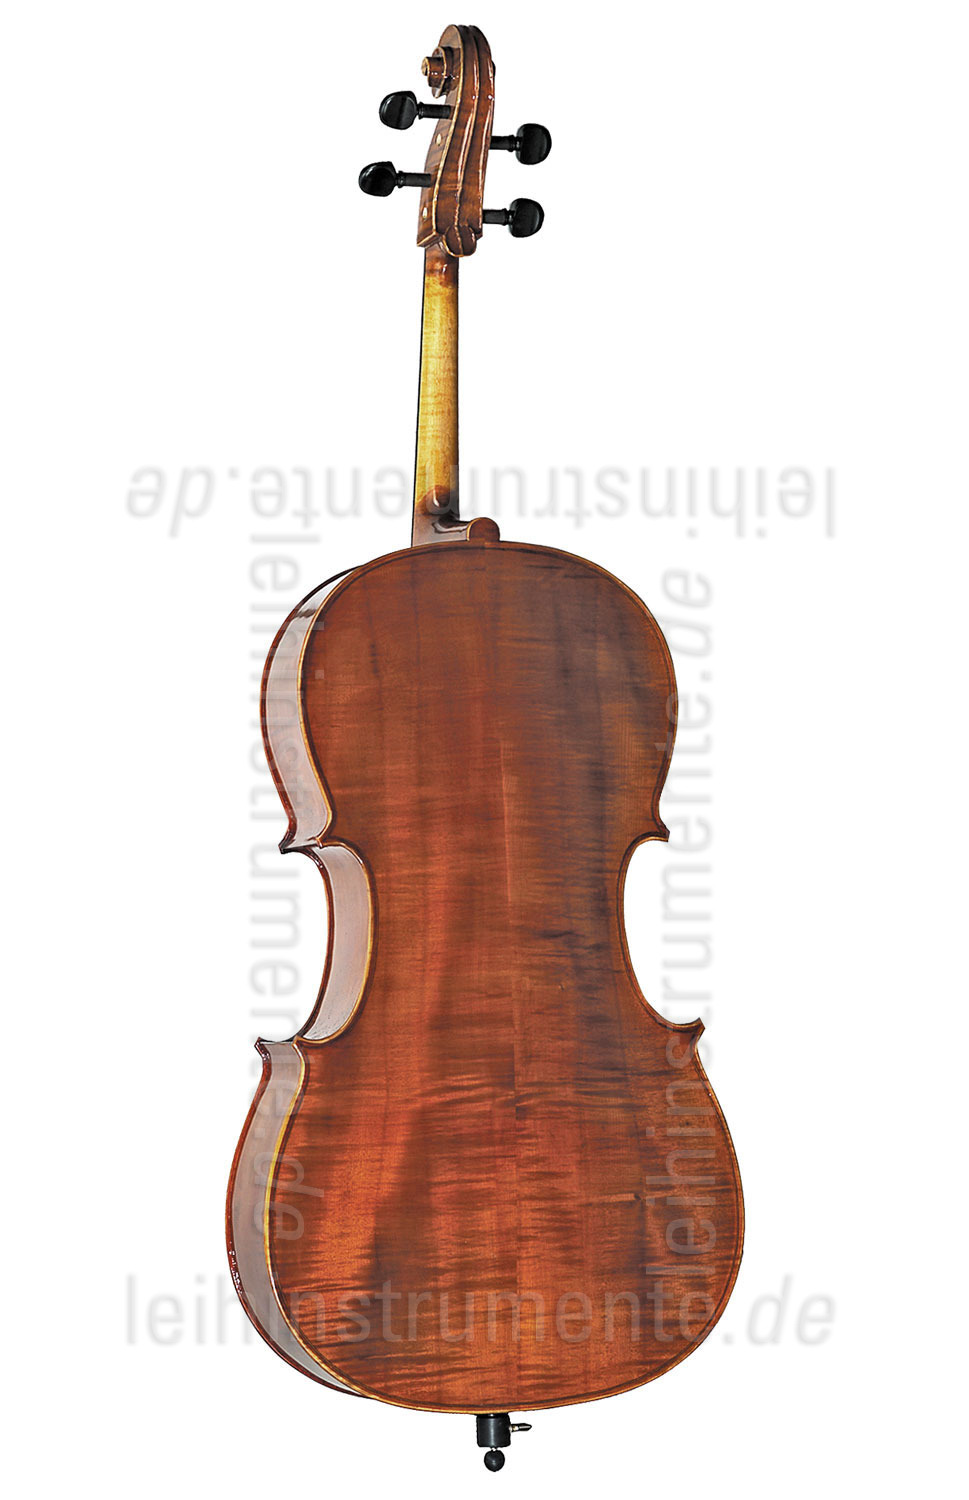 zur Artikelbeschreibung / Preis 3/4 Cello - GEWA ALLEGRO - Komplettset - vollmassiv